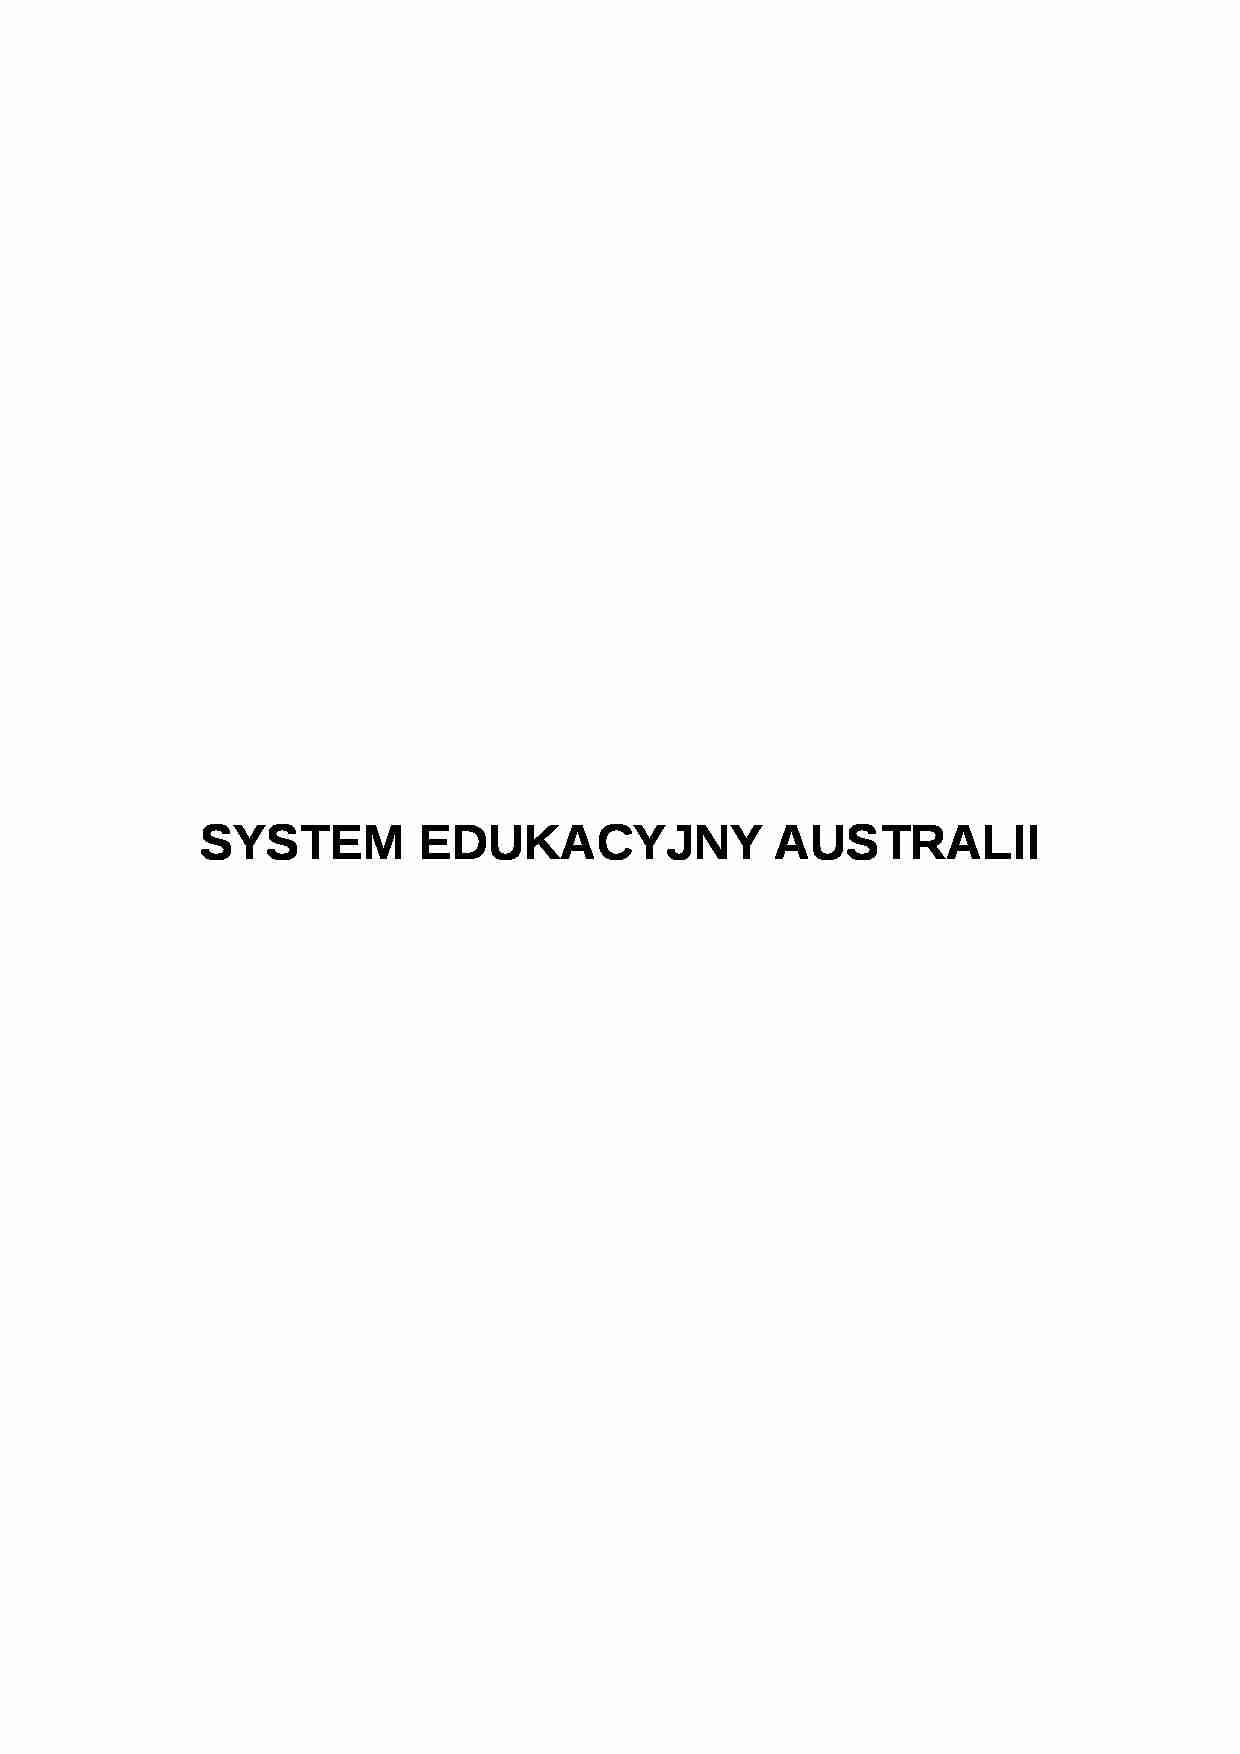 SYSTEM EDUKACYJNY AUSTRALII- pedagogika - strona 1